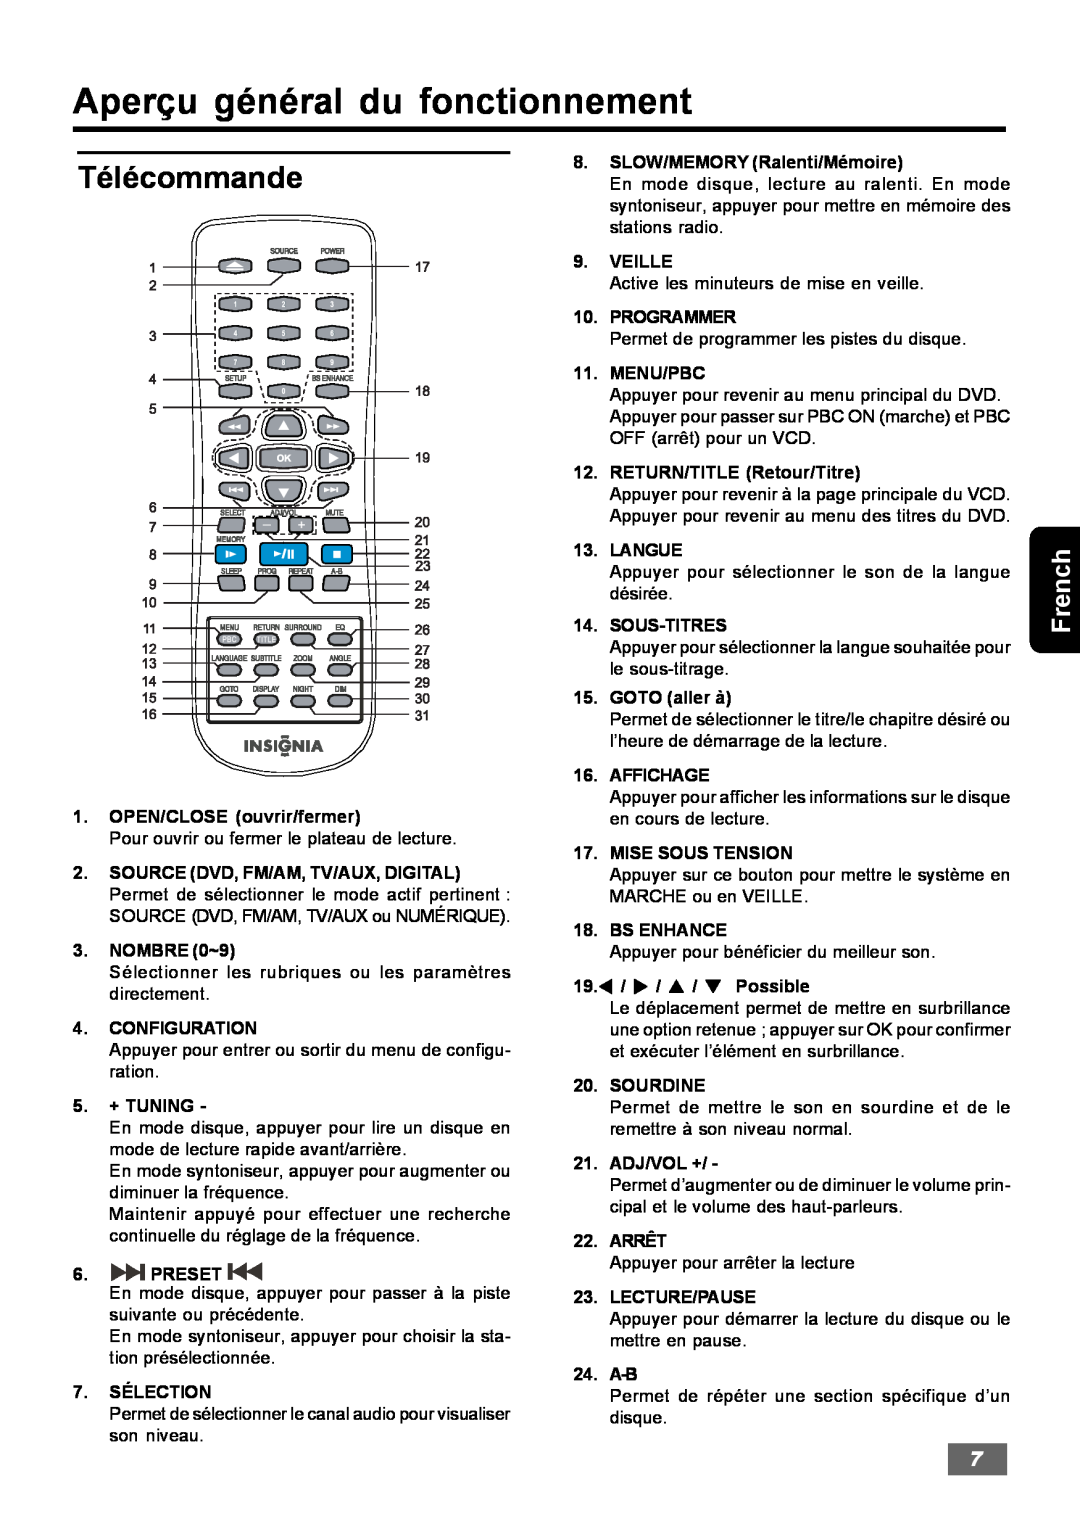 Insignia IS-HTIB102731 owner manual Télécommande, Aperçu général du fonctionnement, French 